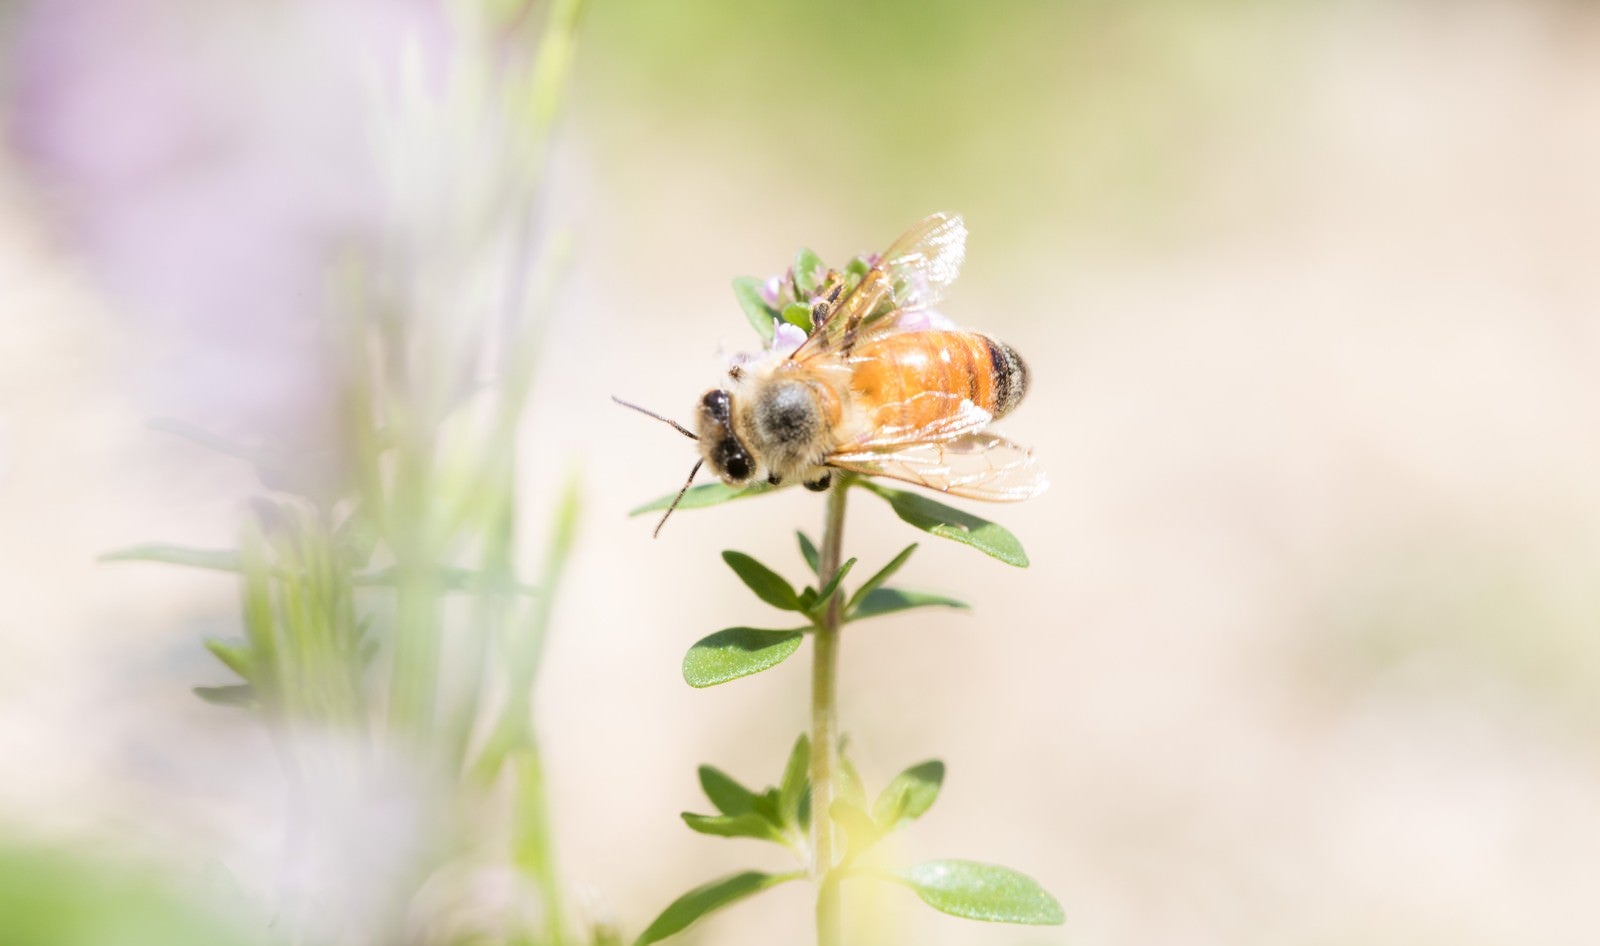 「ハーブに吸蜜に来たミツバチ」の写真